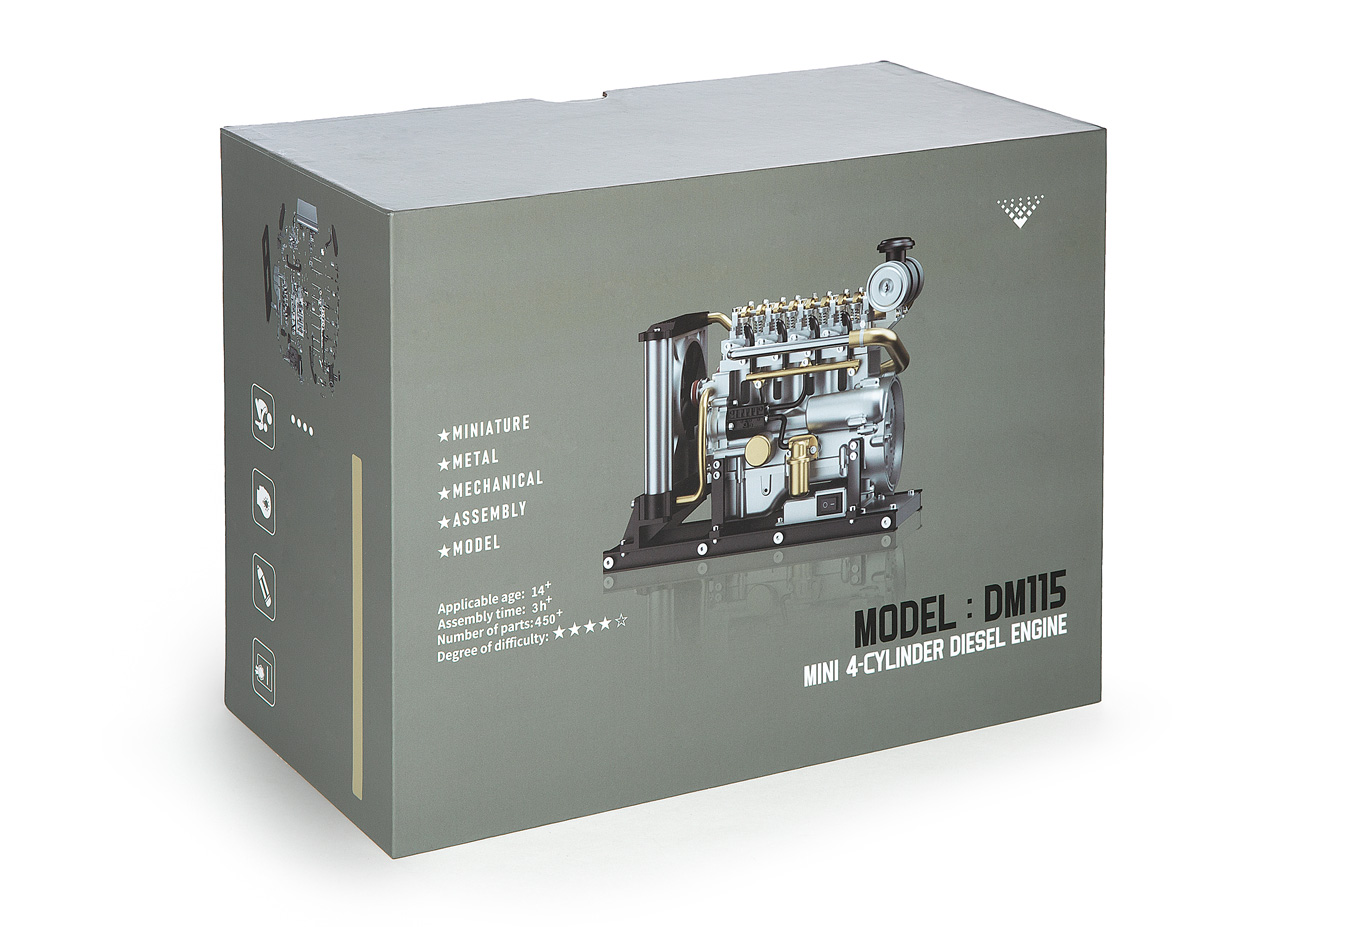 Modellbausatz
Model kit
Kit de construction maquette
Modelbouwpa